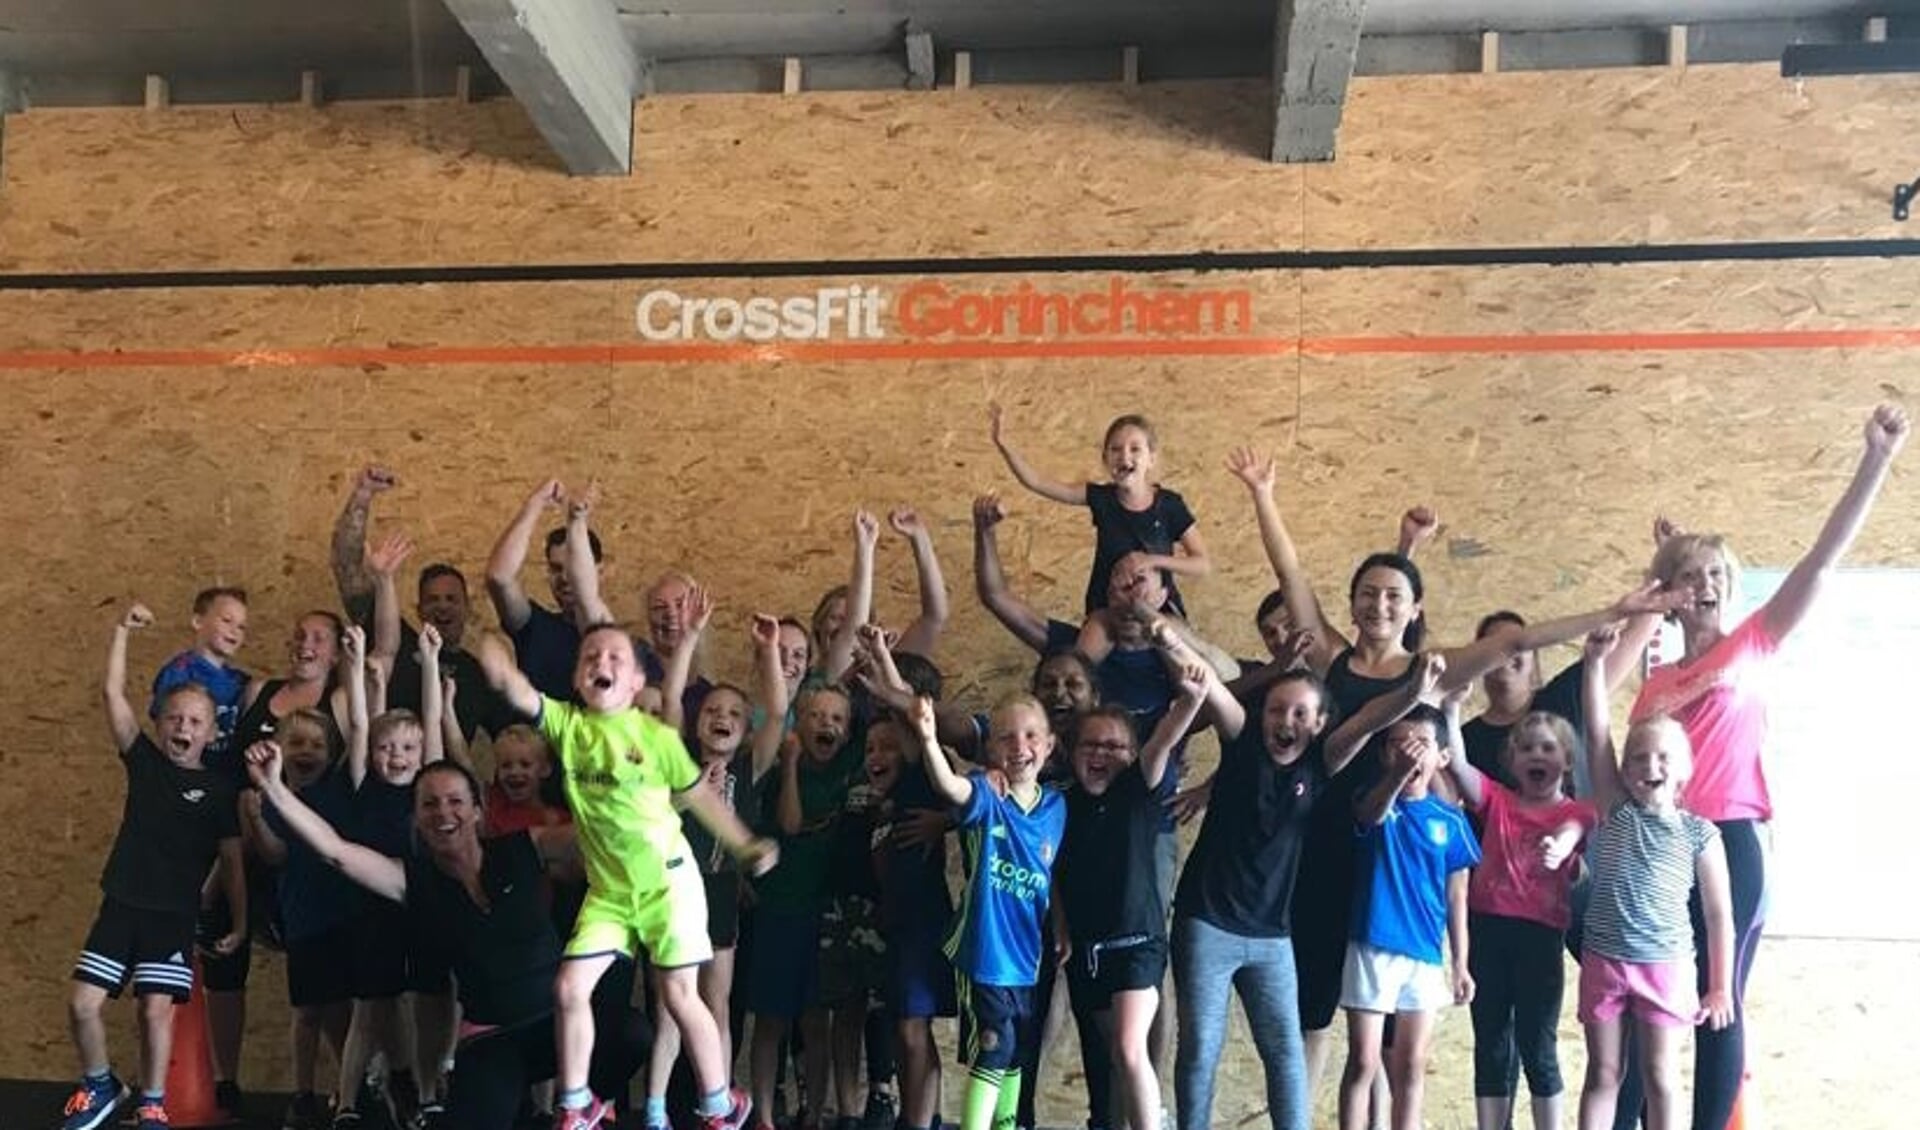 Enthousiaste ouders en kinderen van IKC Merweplein bij CrossFit Gorinchem